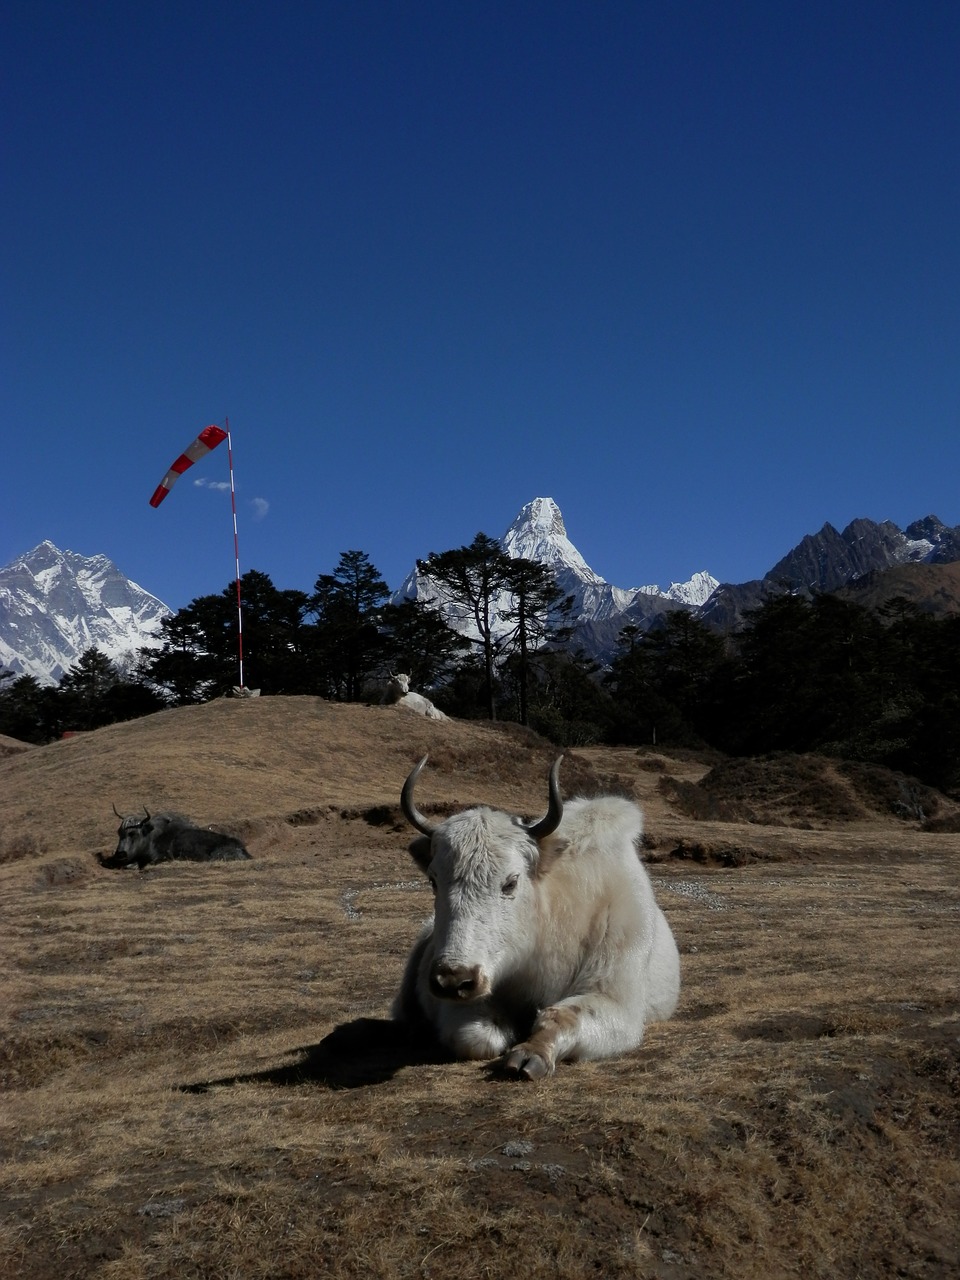 everest lhotse nepal free photo